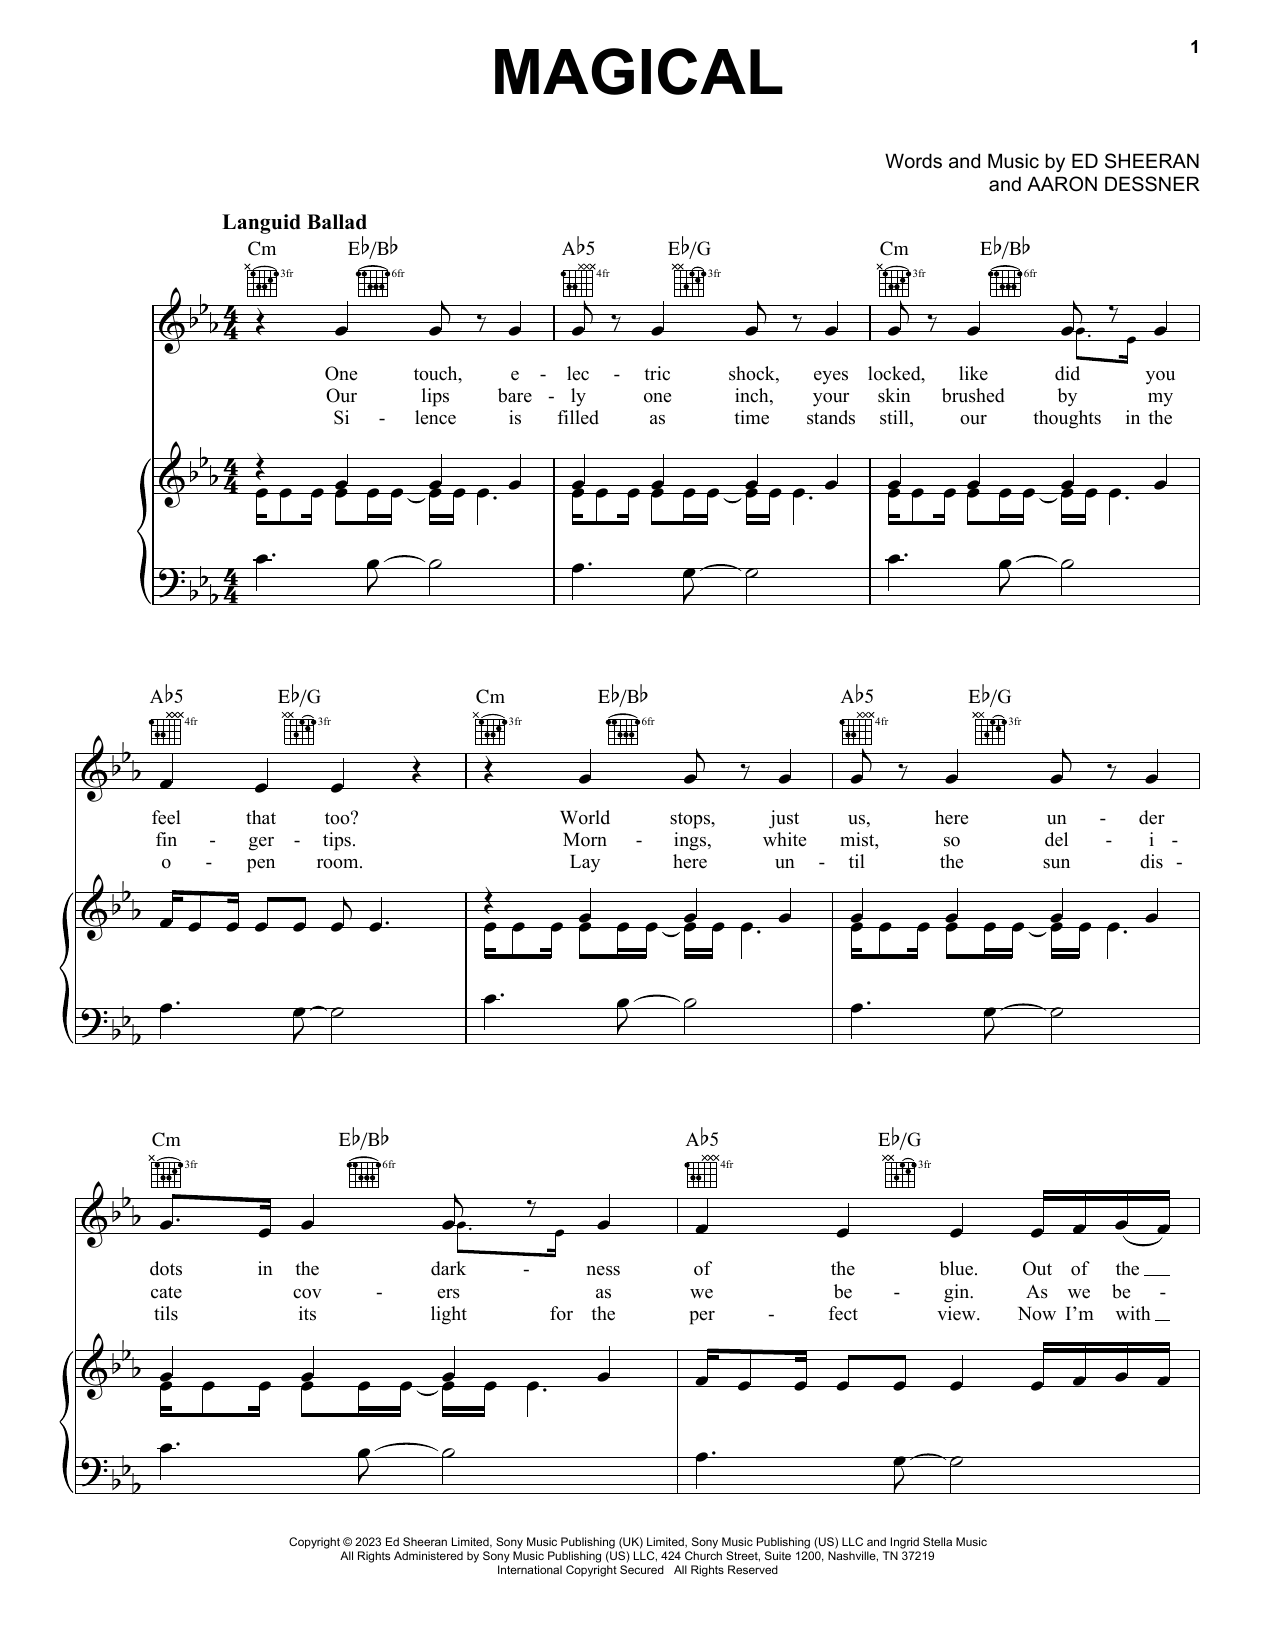 Ed Sheeran Magical sheet music notes and chords. Download Printable PDF.